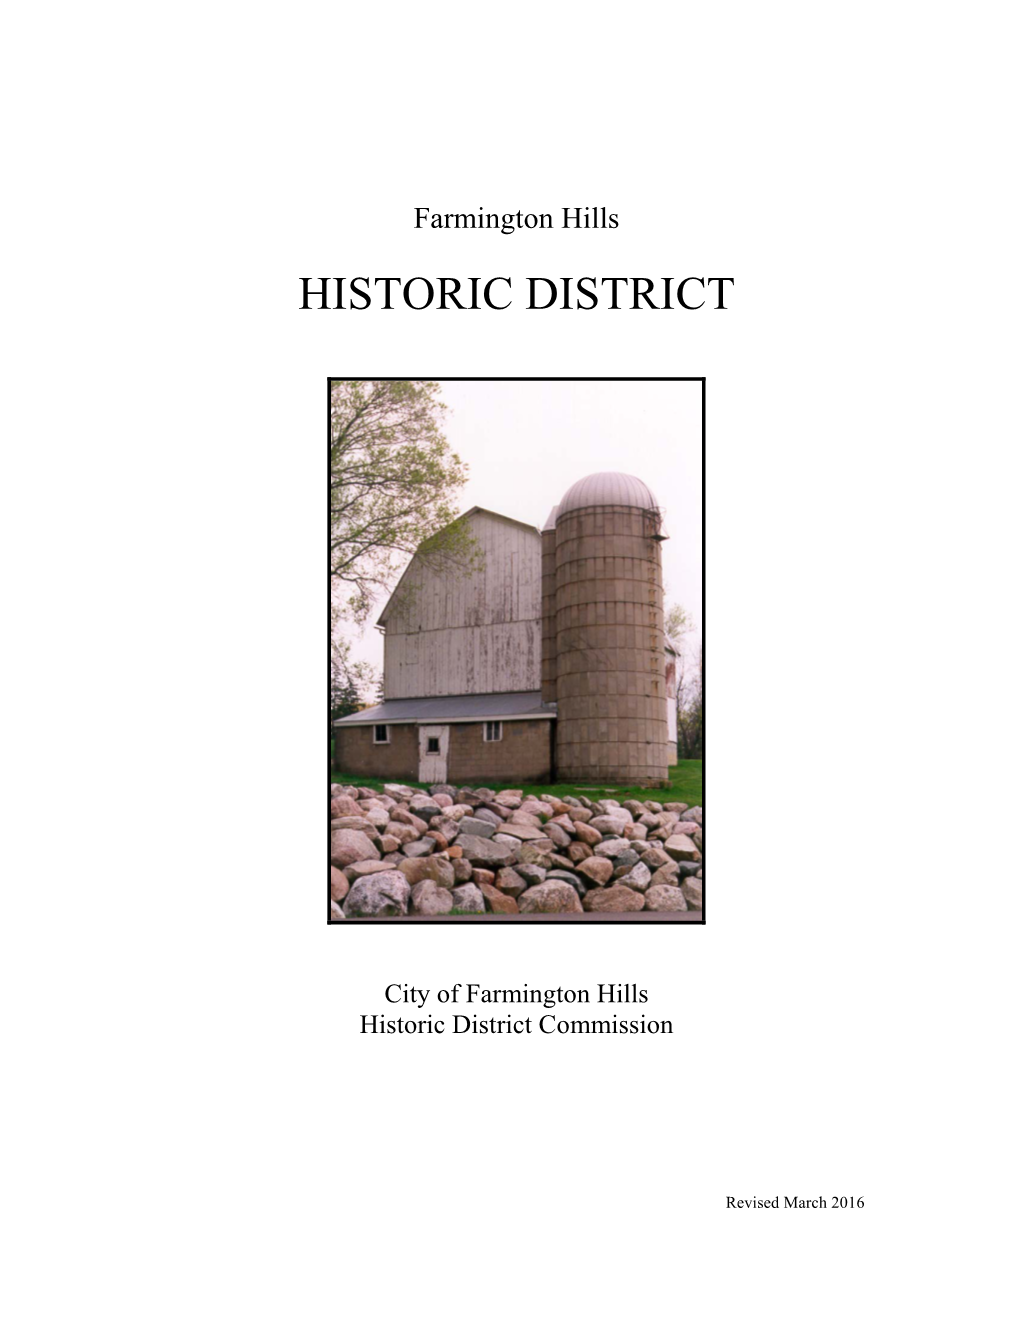 City of Farmington Hills Historic District Commission